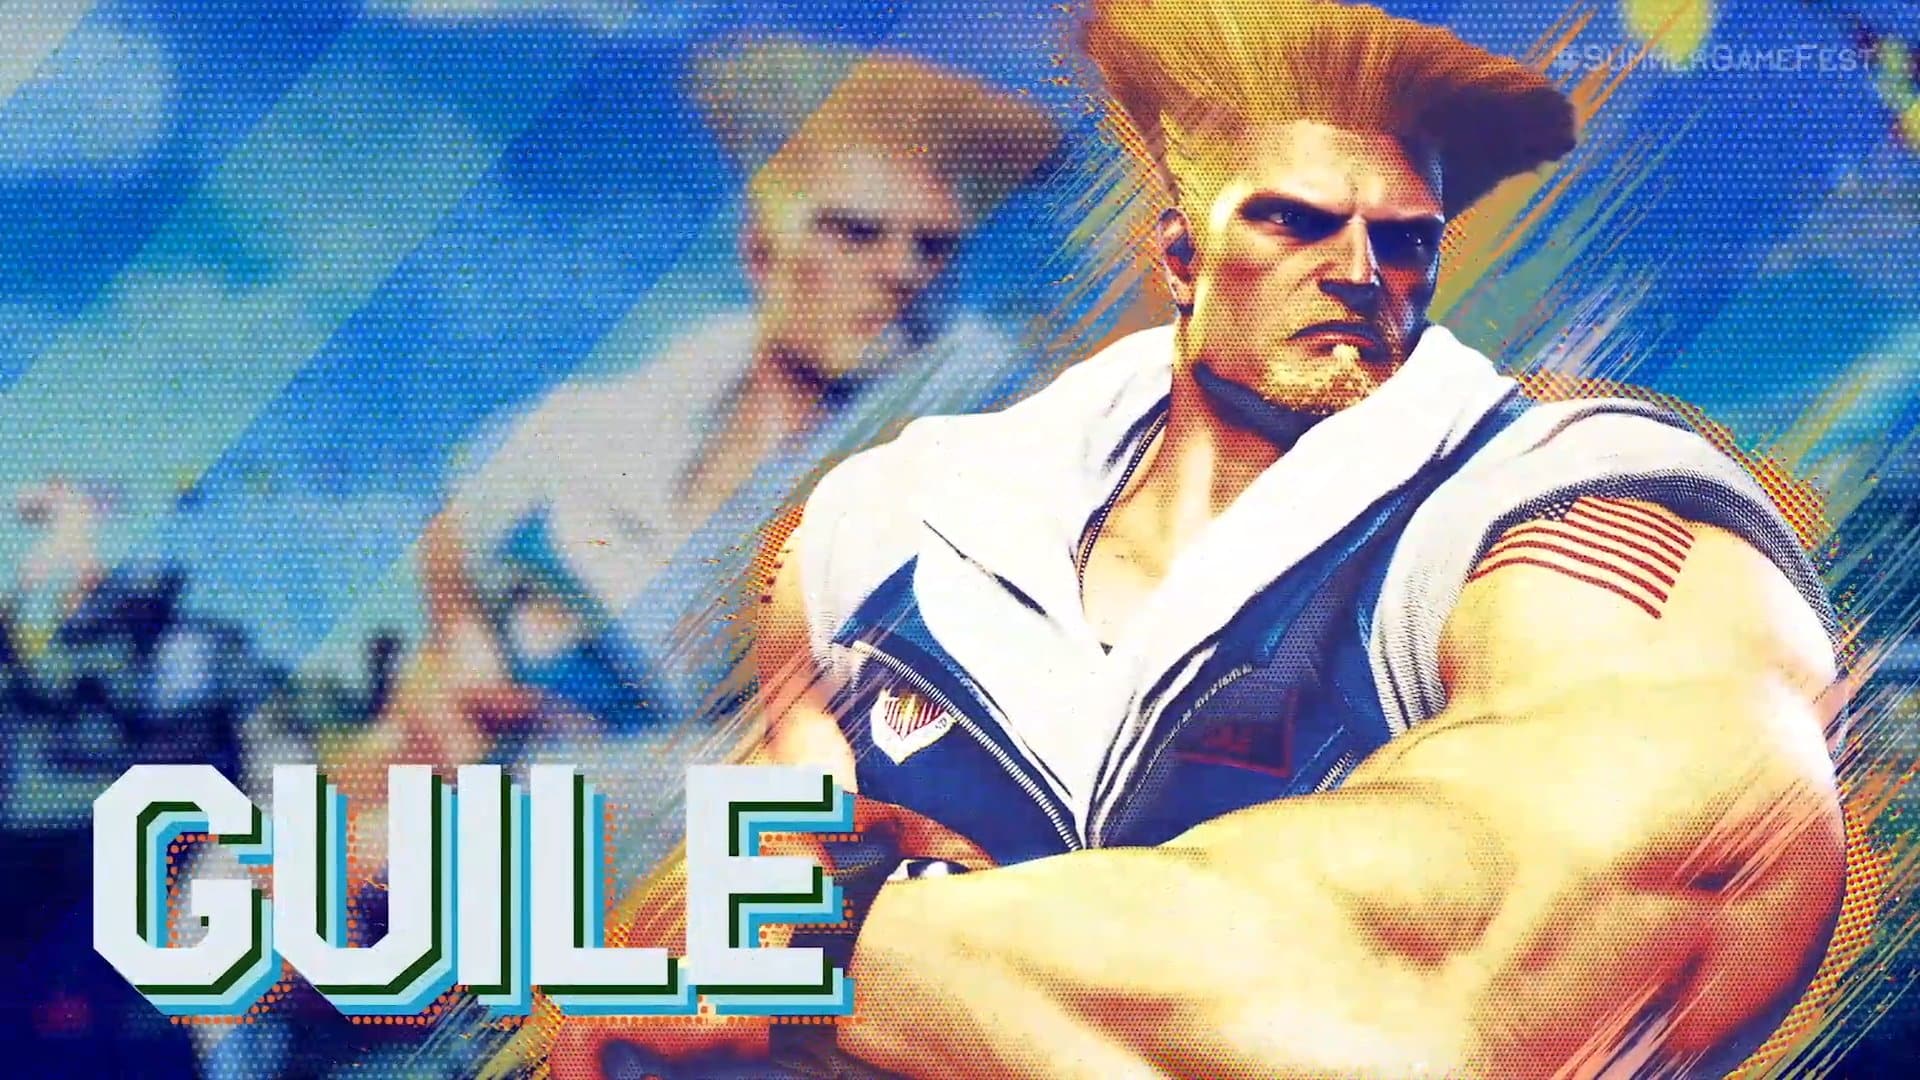 Super Street Fighter IV - Guile Arcade 